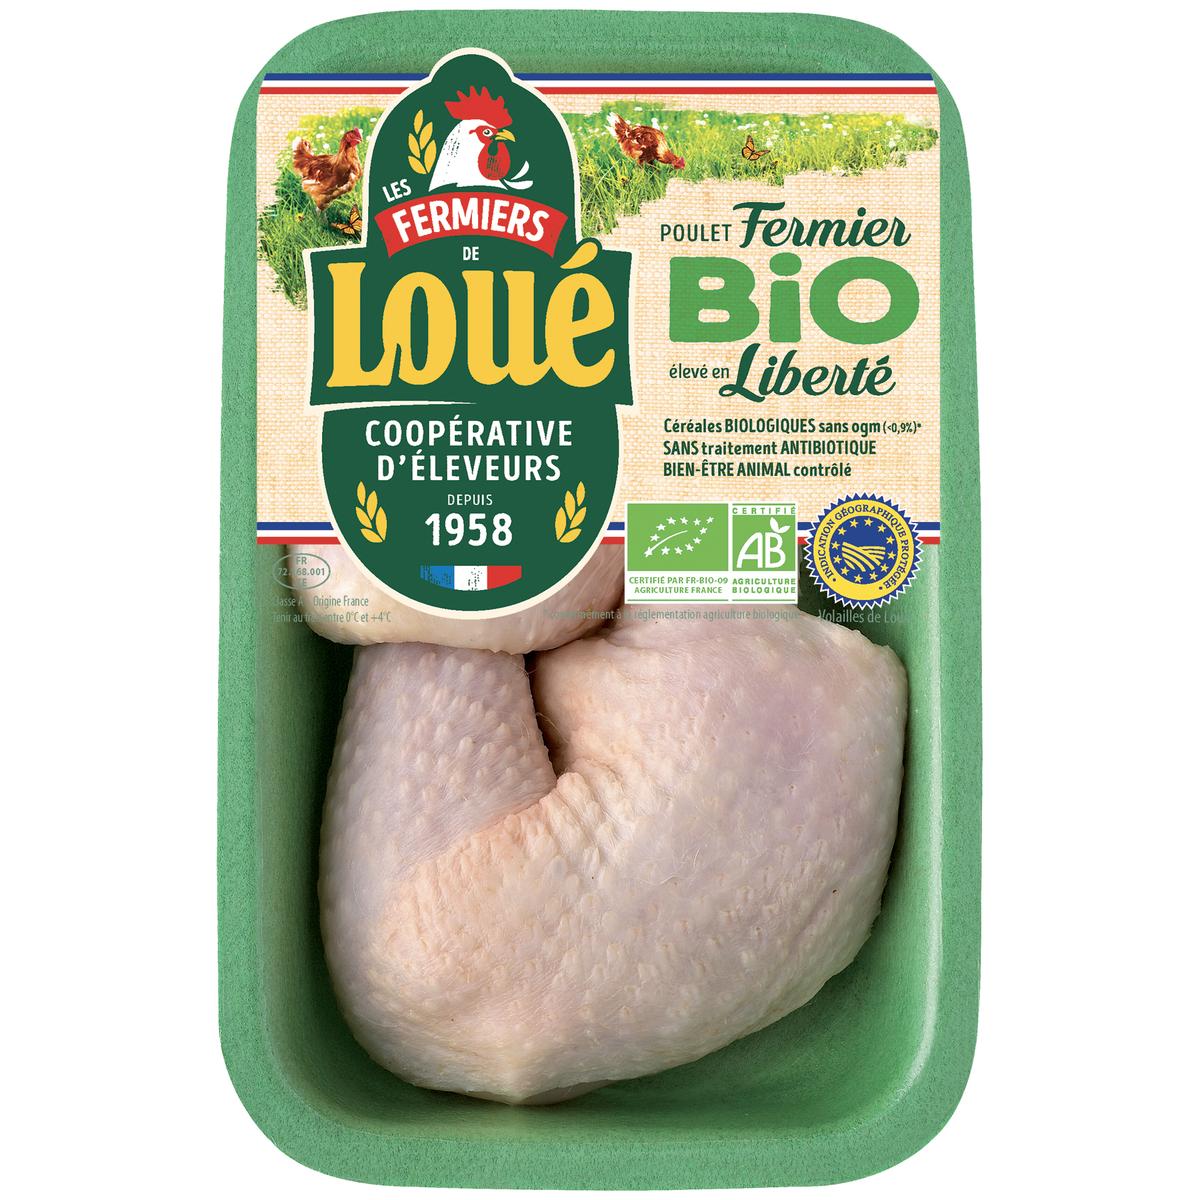 Cuisses de poulet blanc bio - Poulet fermier BIO